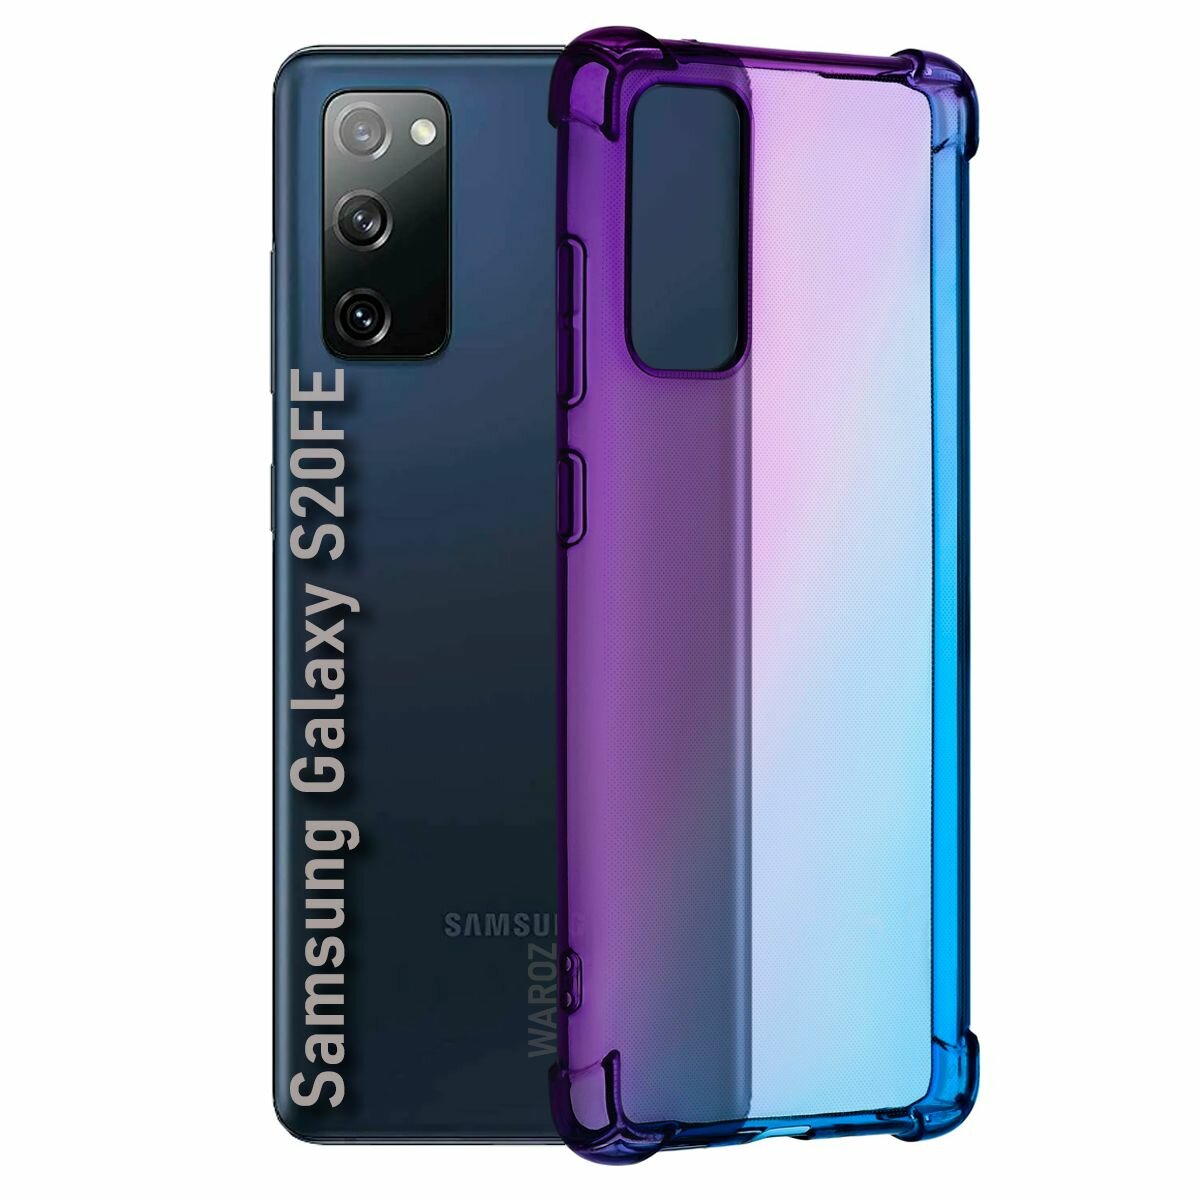 Чехол для смартфона Samsung Galaxy S20FE, S20 Lite силиконовый противоударный с защитой камеры, бампер с усиленными углами для телефона Самсунг Галакси С20 ФЕ, С20 Лайт прозрачный фиолетово-синий